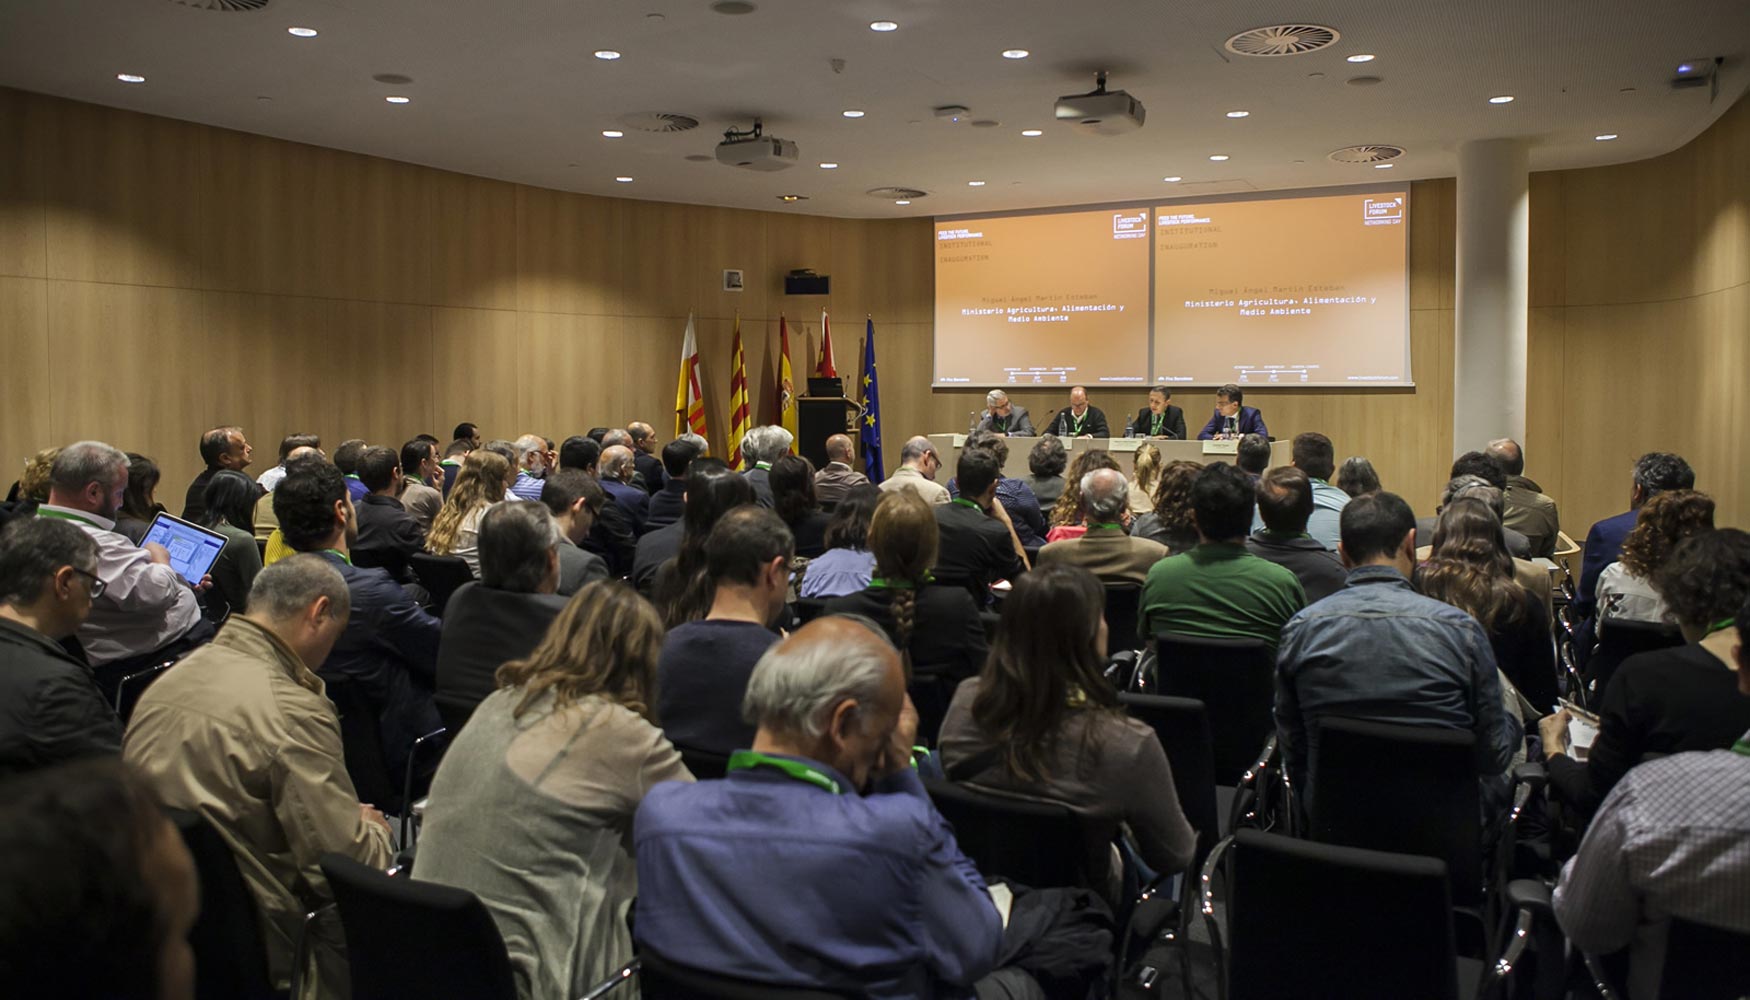 El evento, organizado por Fira Barcelona y el IRTA, reuni a 80 compaas del sector. Foto: Livestock Forum